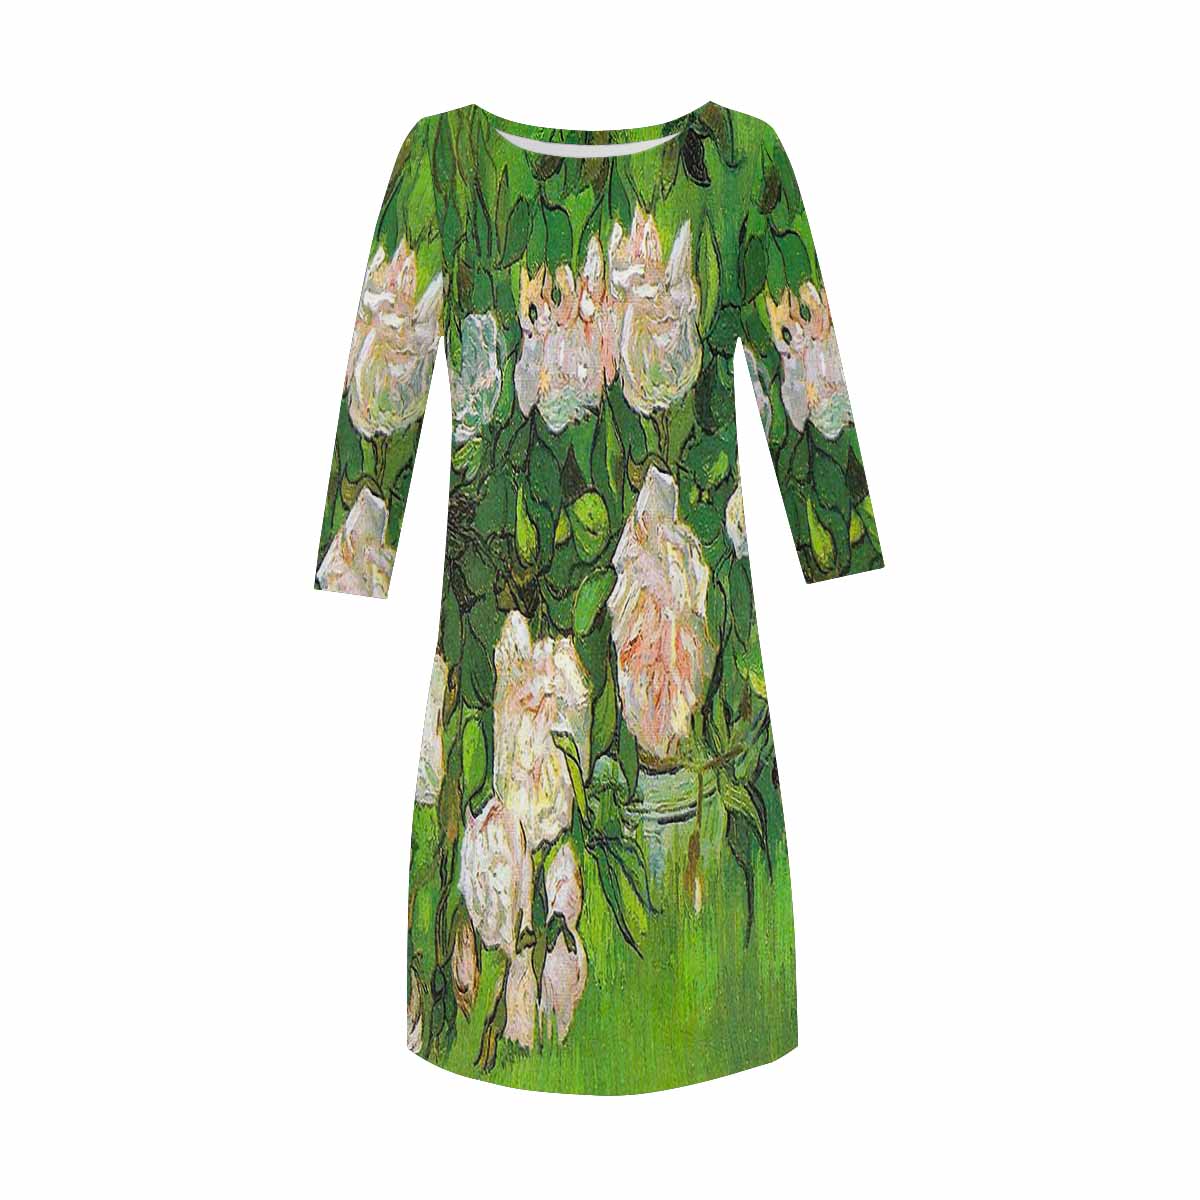 Vintage floral loose dress, model D29532 Design 06